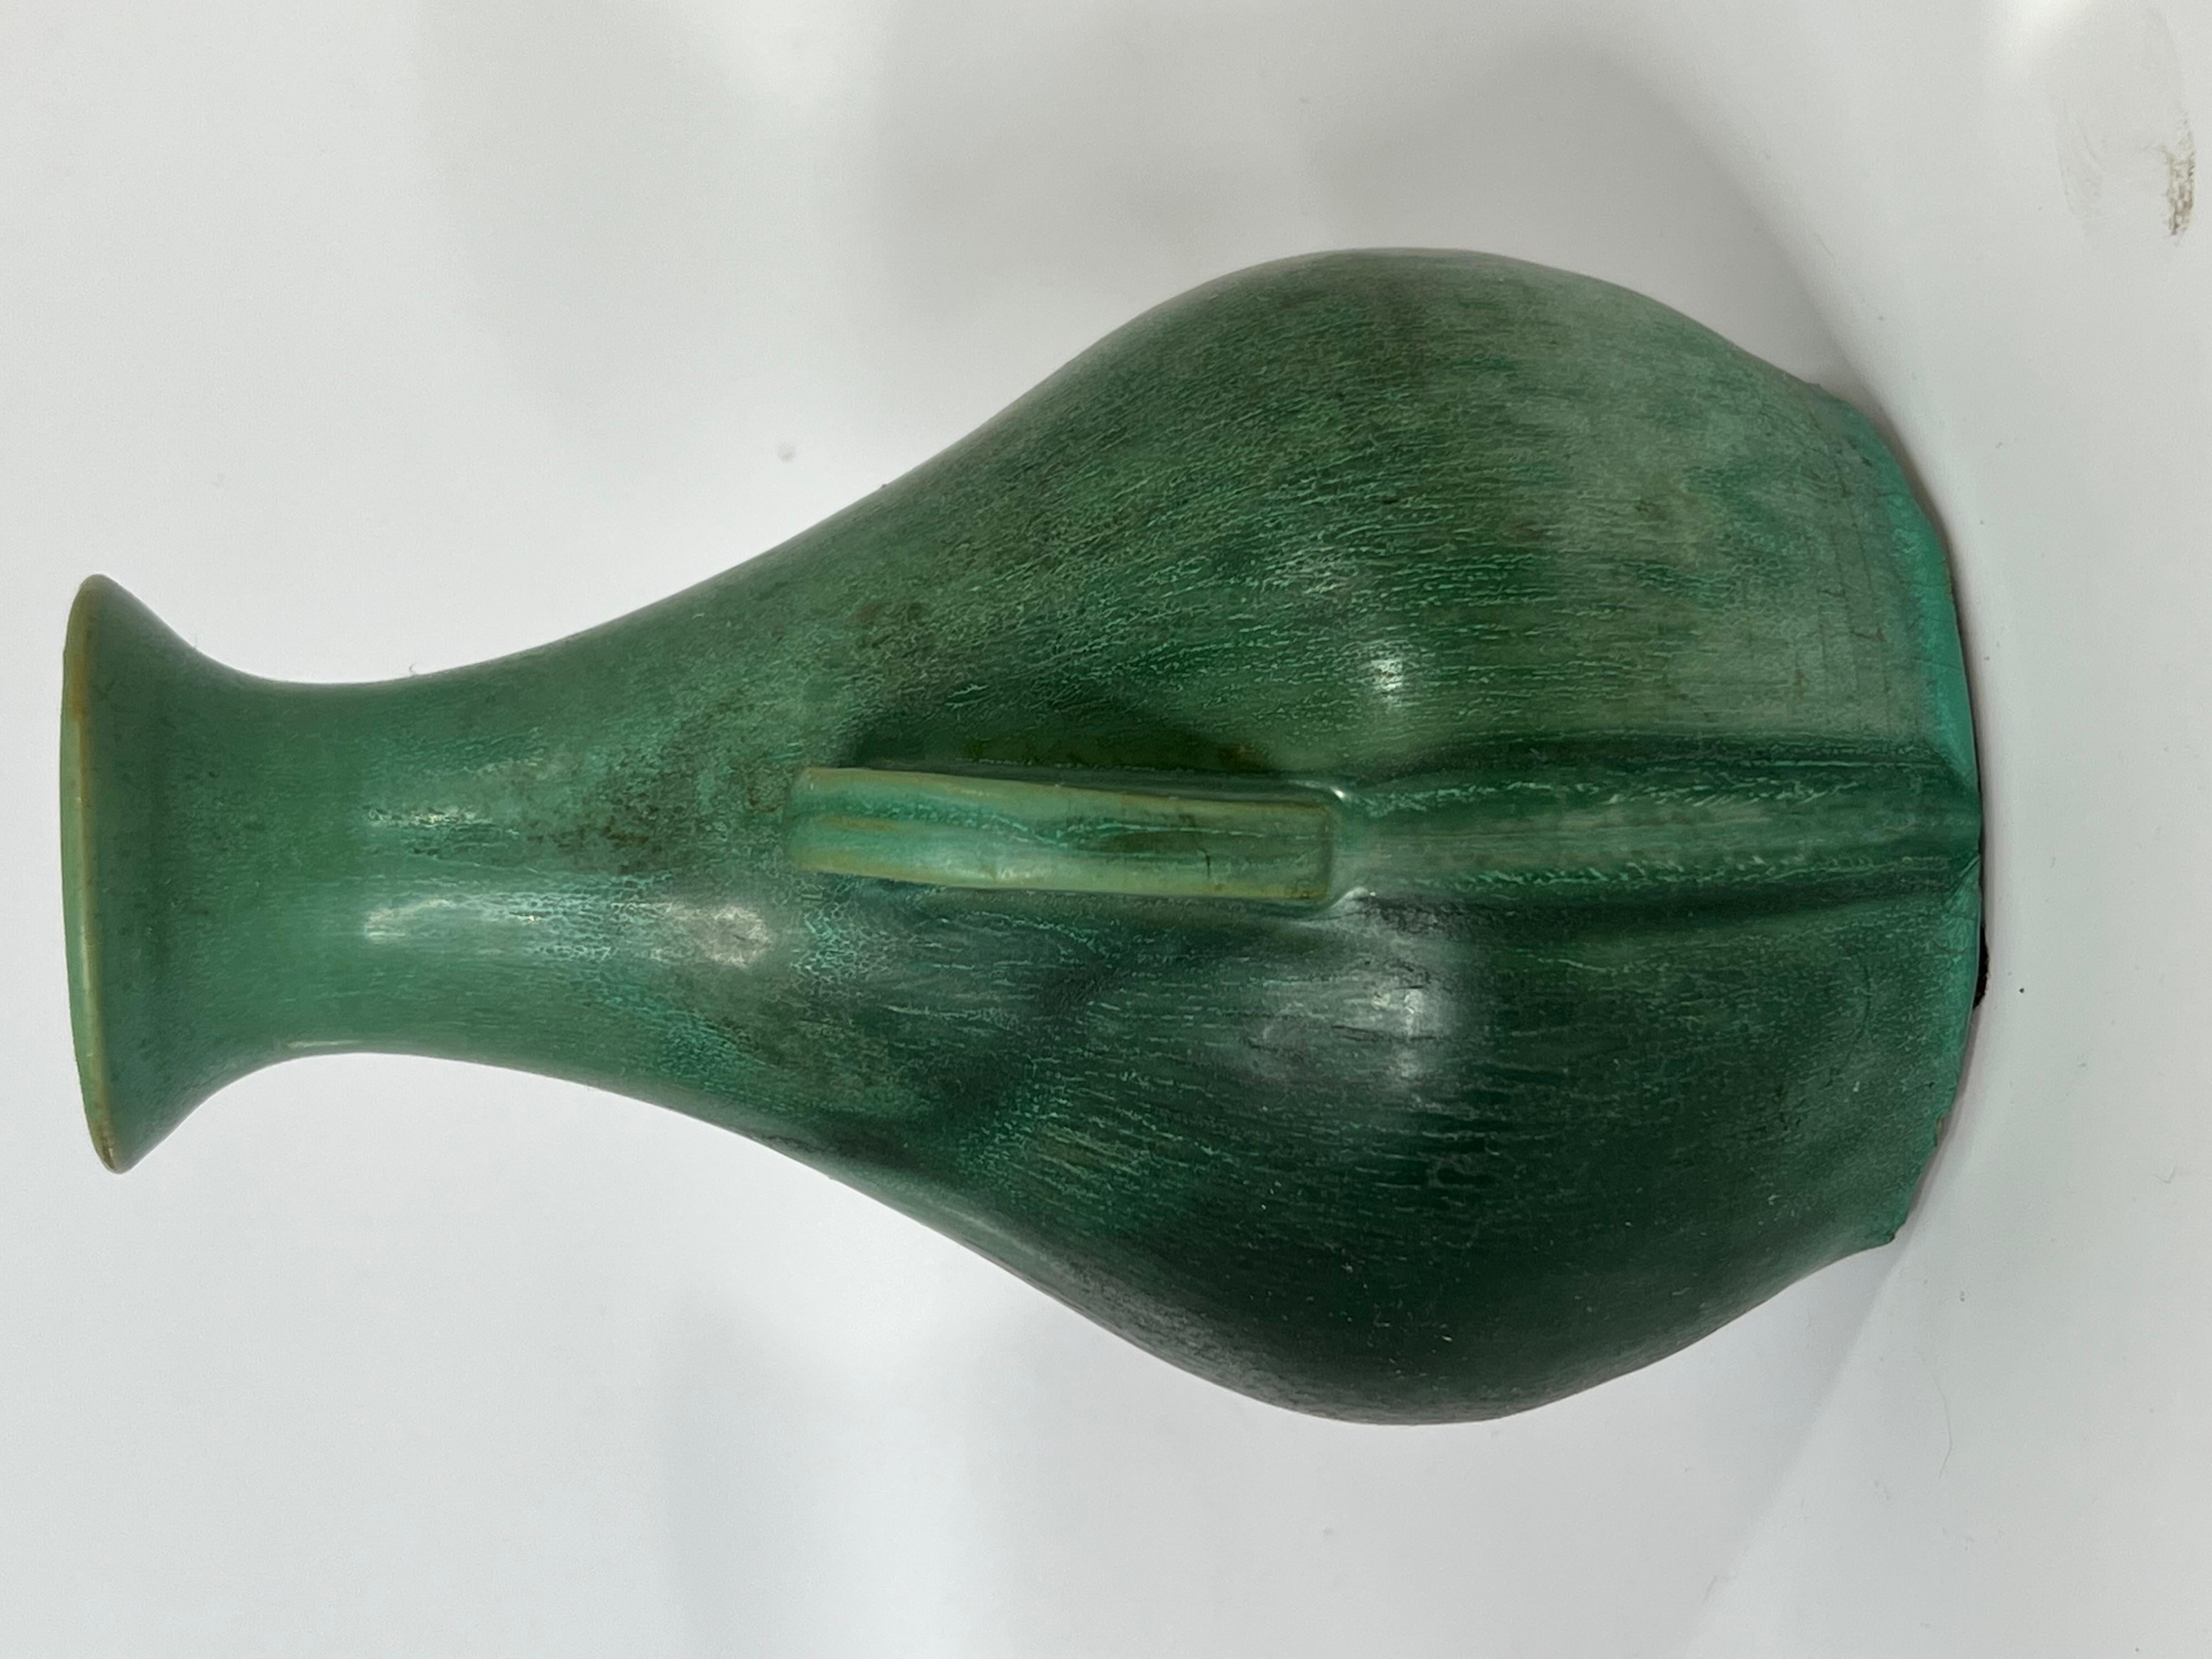 American Genuine Bybee (tm) Matte Crystalline Green handled vase.